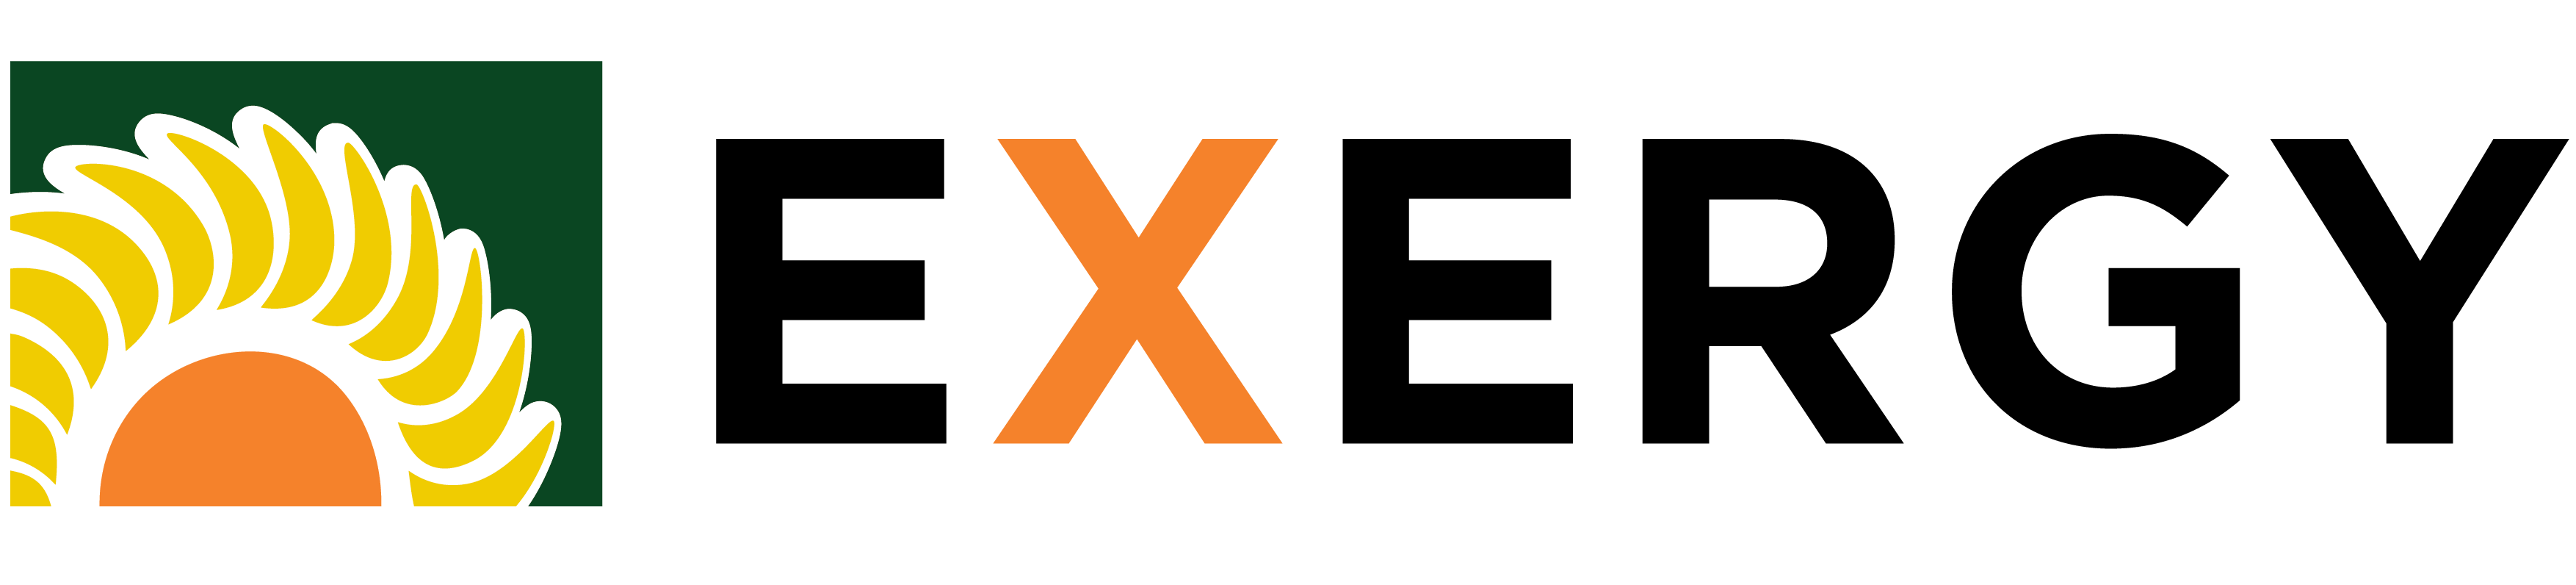 logo_exergy_CMYK-01